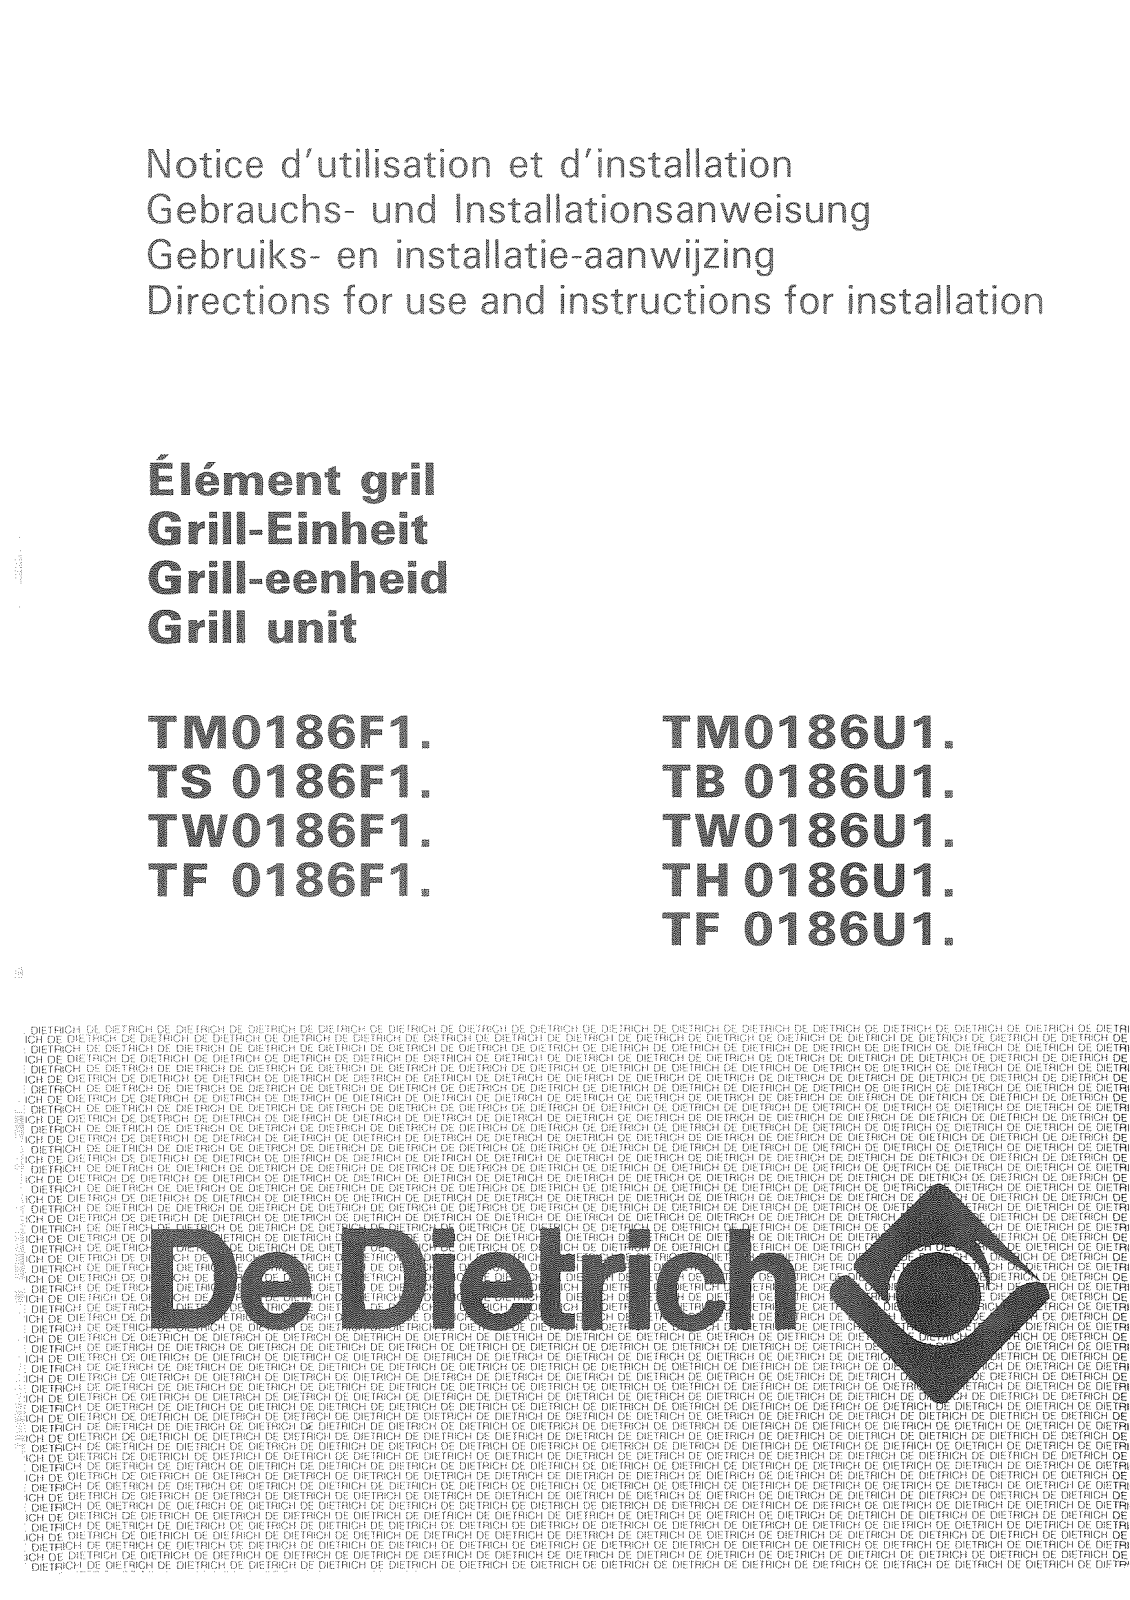 De dietrich TW0186U1, TF0186U1, TH0186U1, TF0186F1, TM0186U1 User Manual